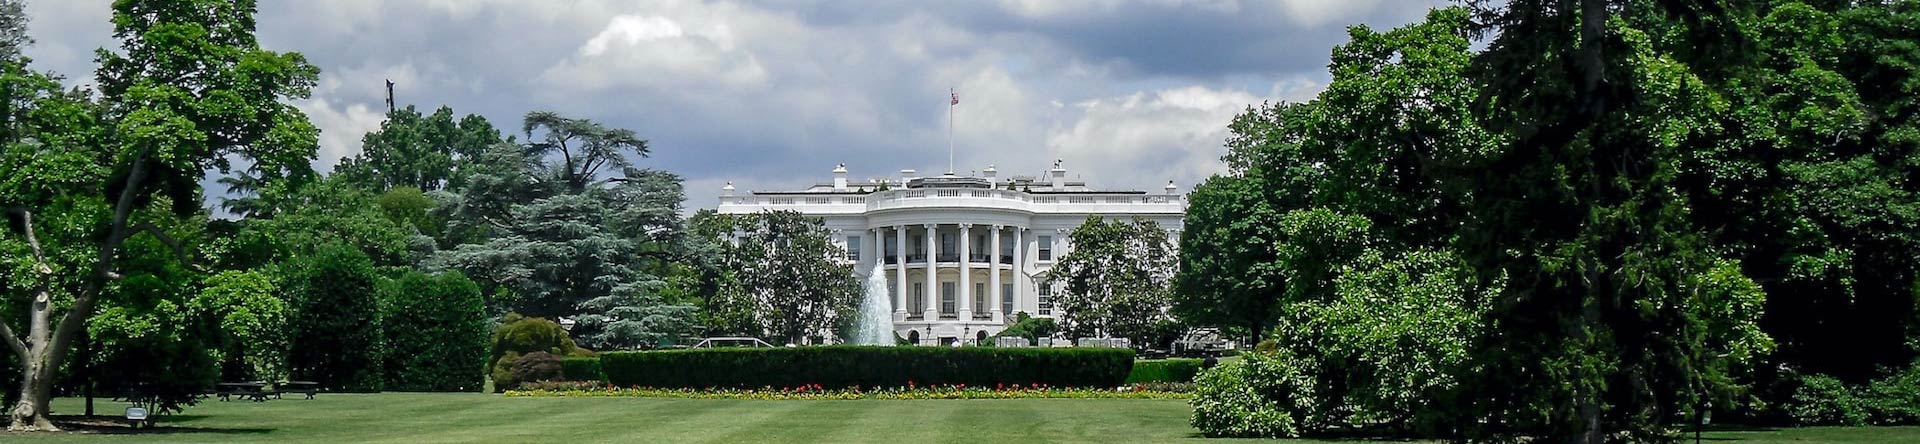 البيت الأبيض واشنطن العاصمة